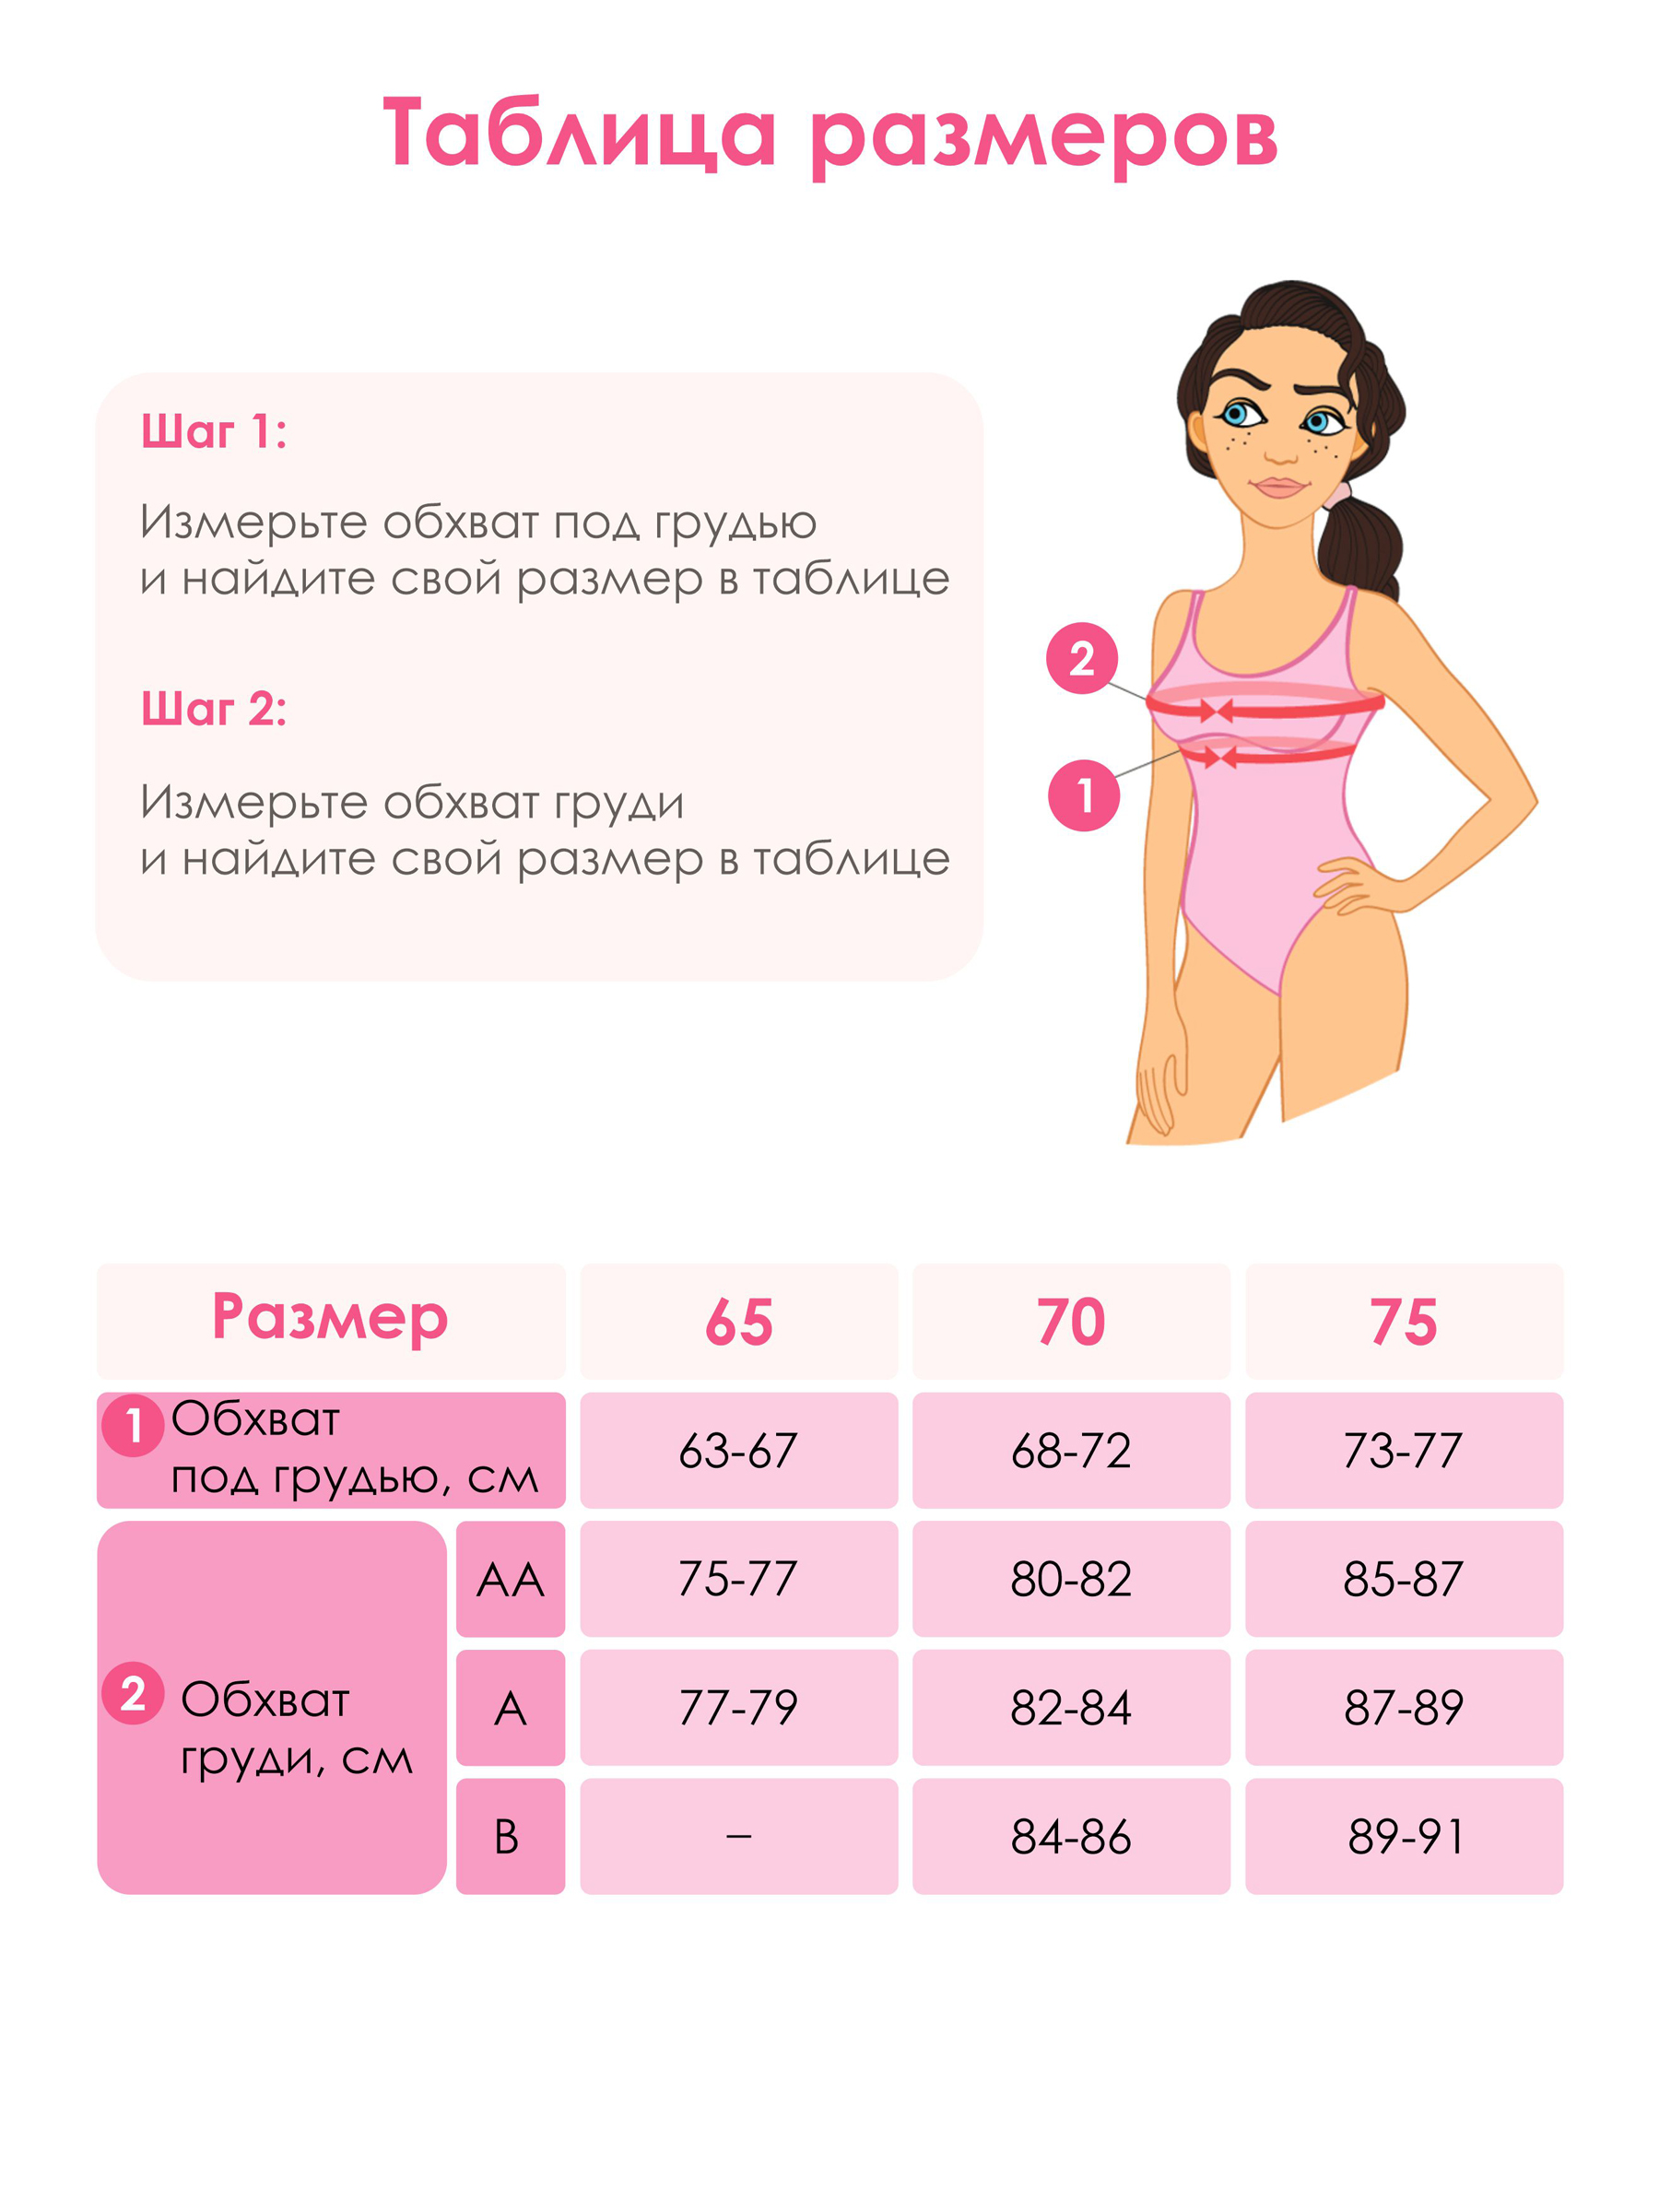 статистика размеров груди в россии фото 85